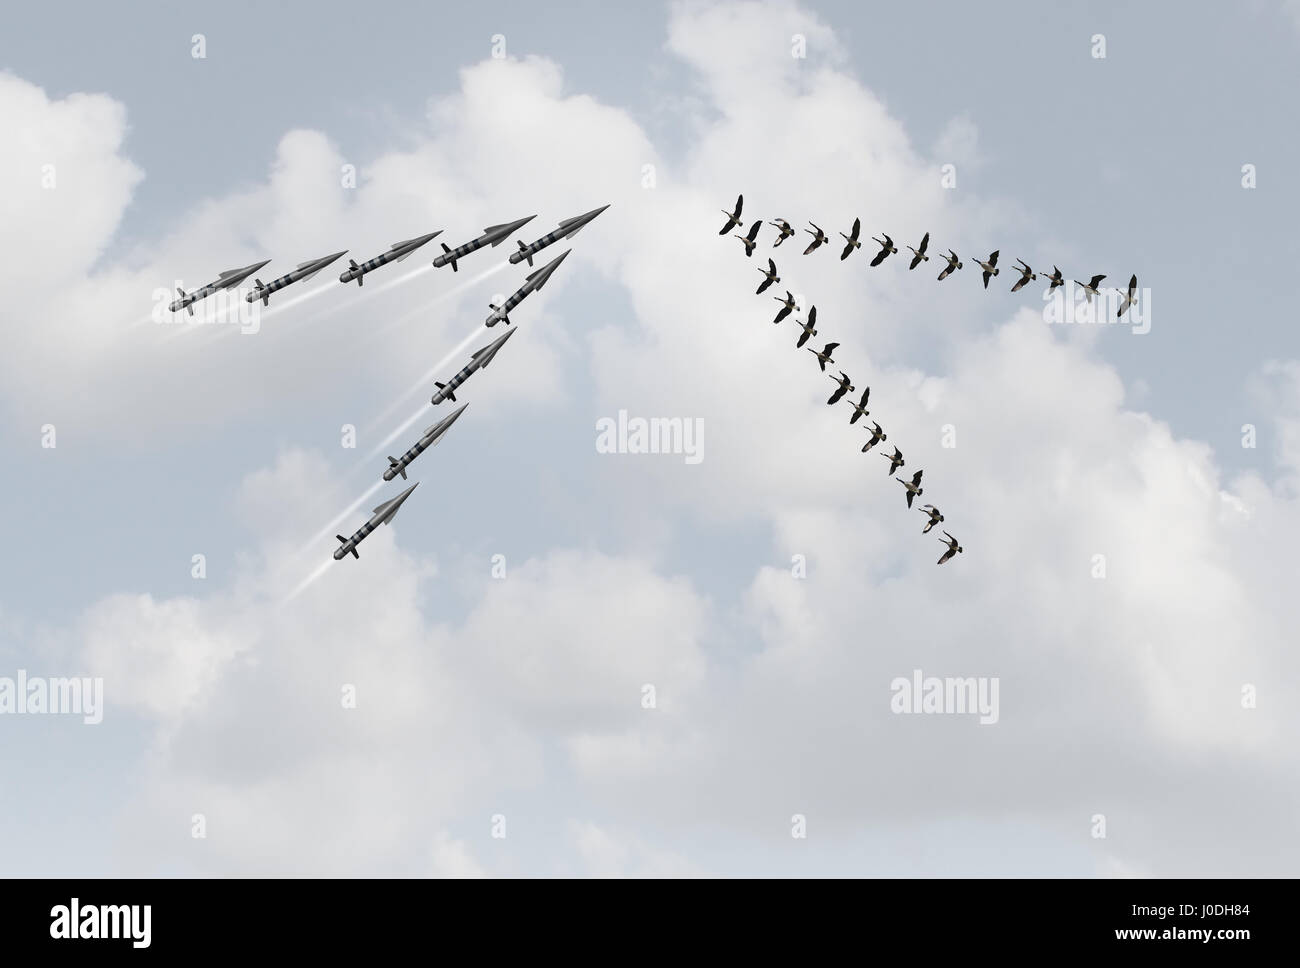 Concept de la paix comme un groupe d'oies pacifiques en v face à des missiles dangereux comme une métaphore de la violence et le pacifisme. Banque D'Images